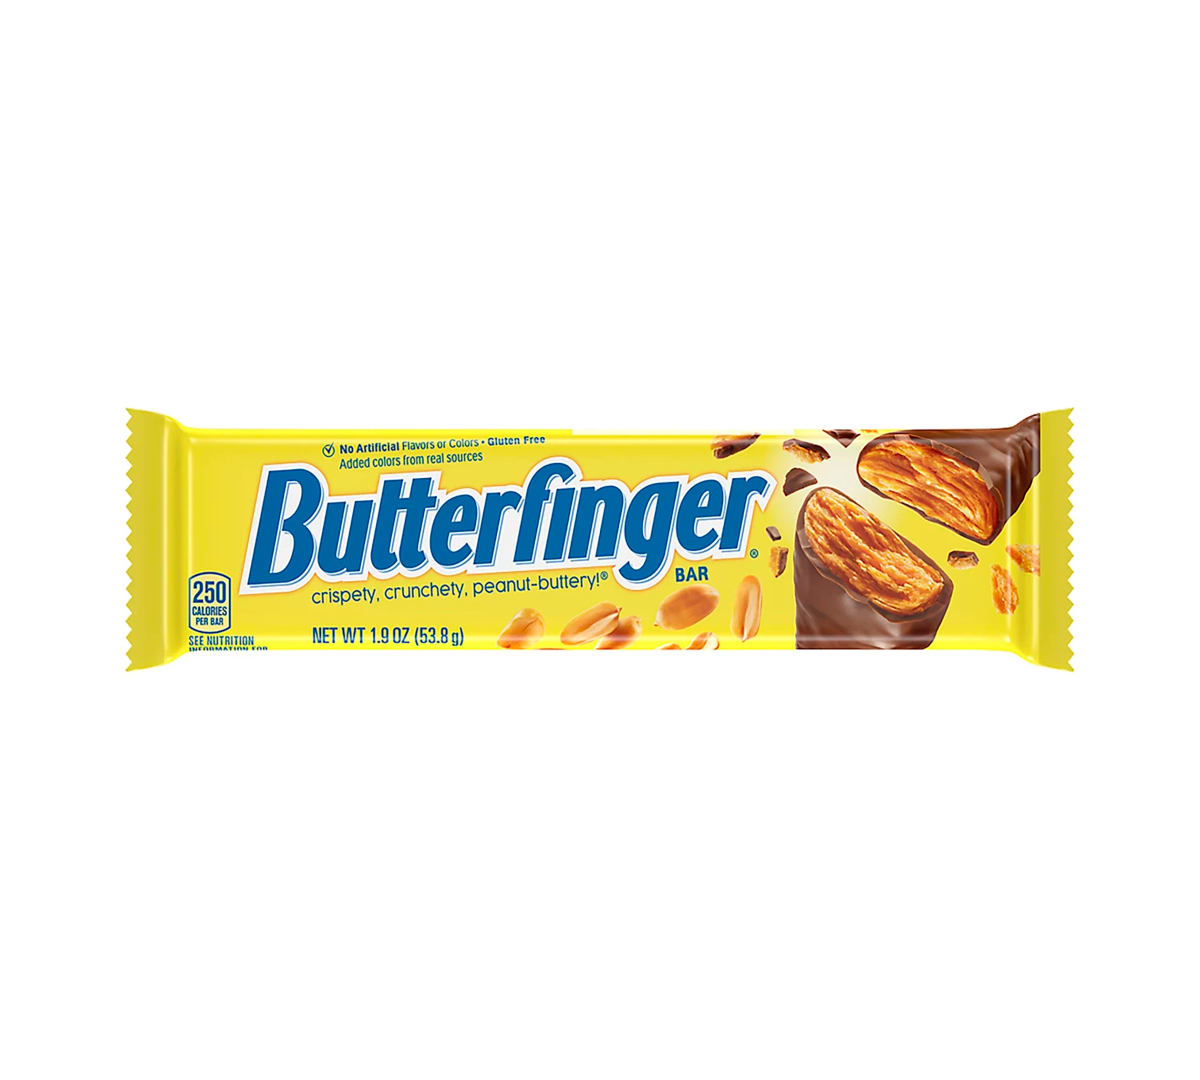 Butterfinger Bar, barreta di burro d'arachidi ricoperti di cioccolato croccante